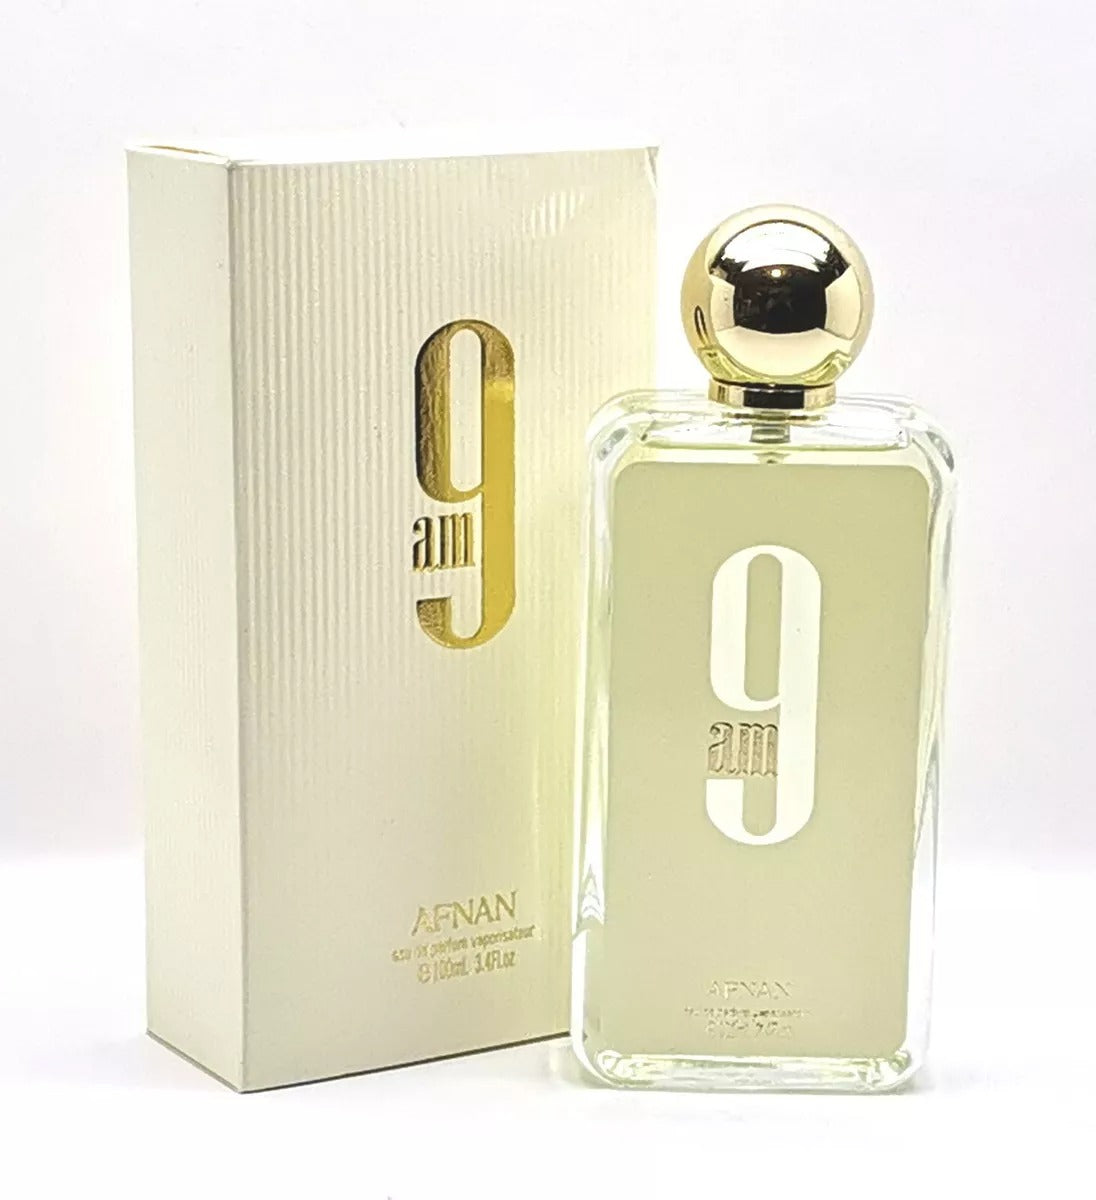 9 AM by Afnan, 3.4 oz Eau De Parfum Spray for Men